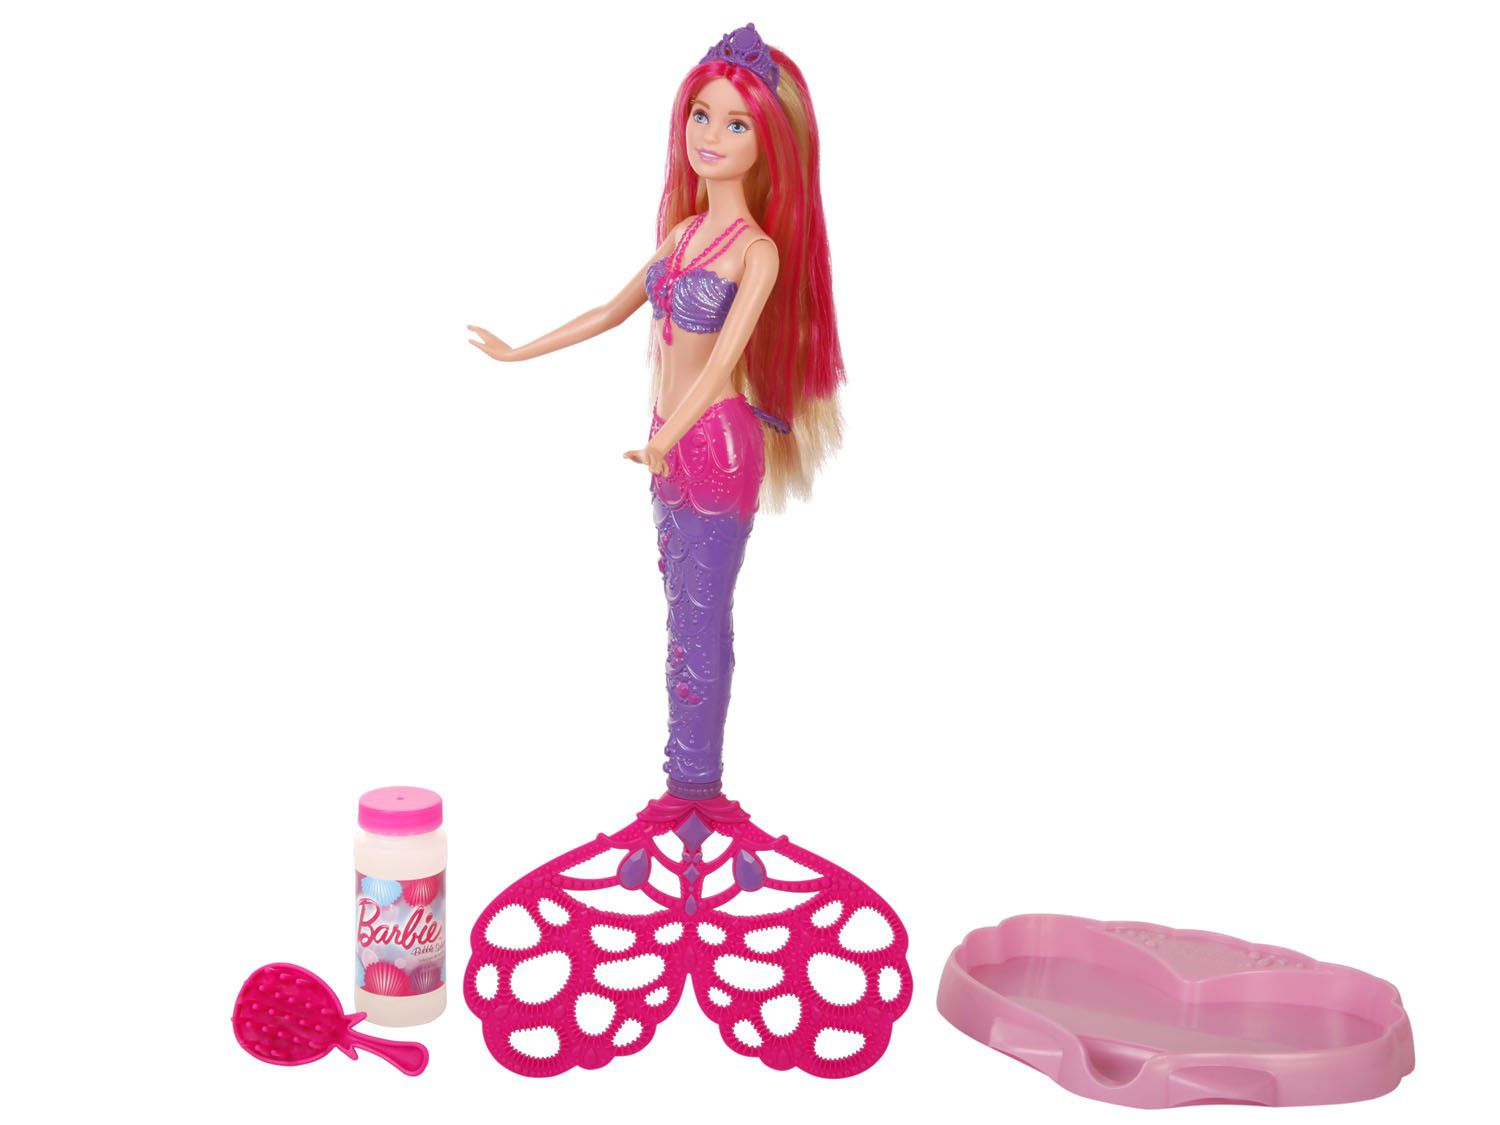 Comprar Boneca Barbie sereias Luzes Mágicas de Mattel